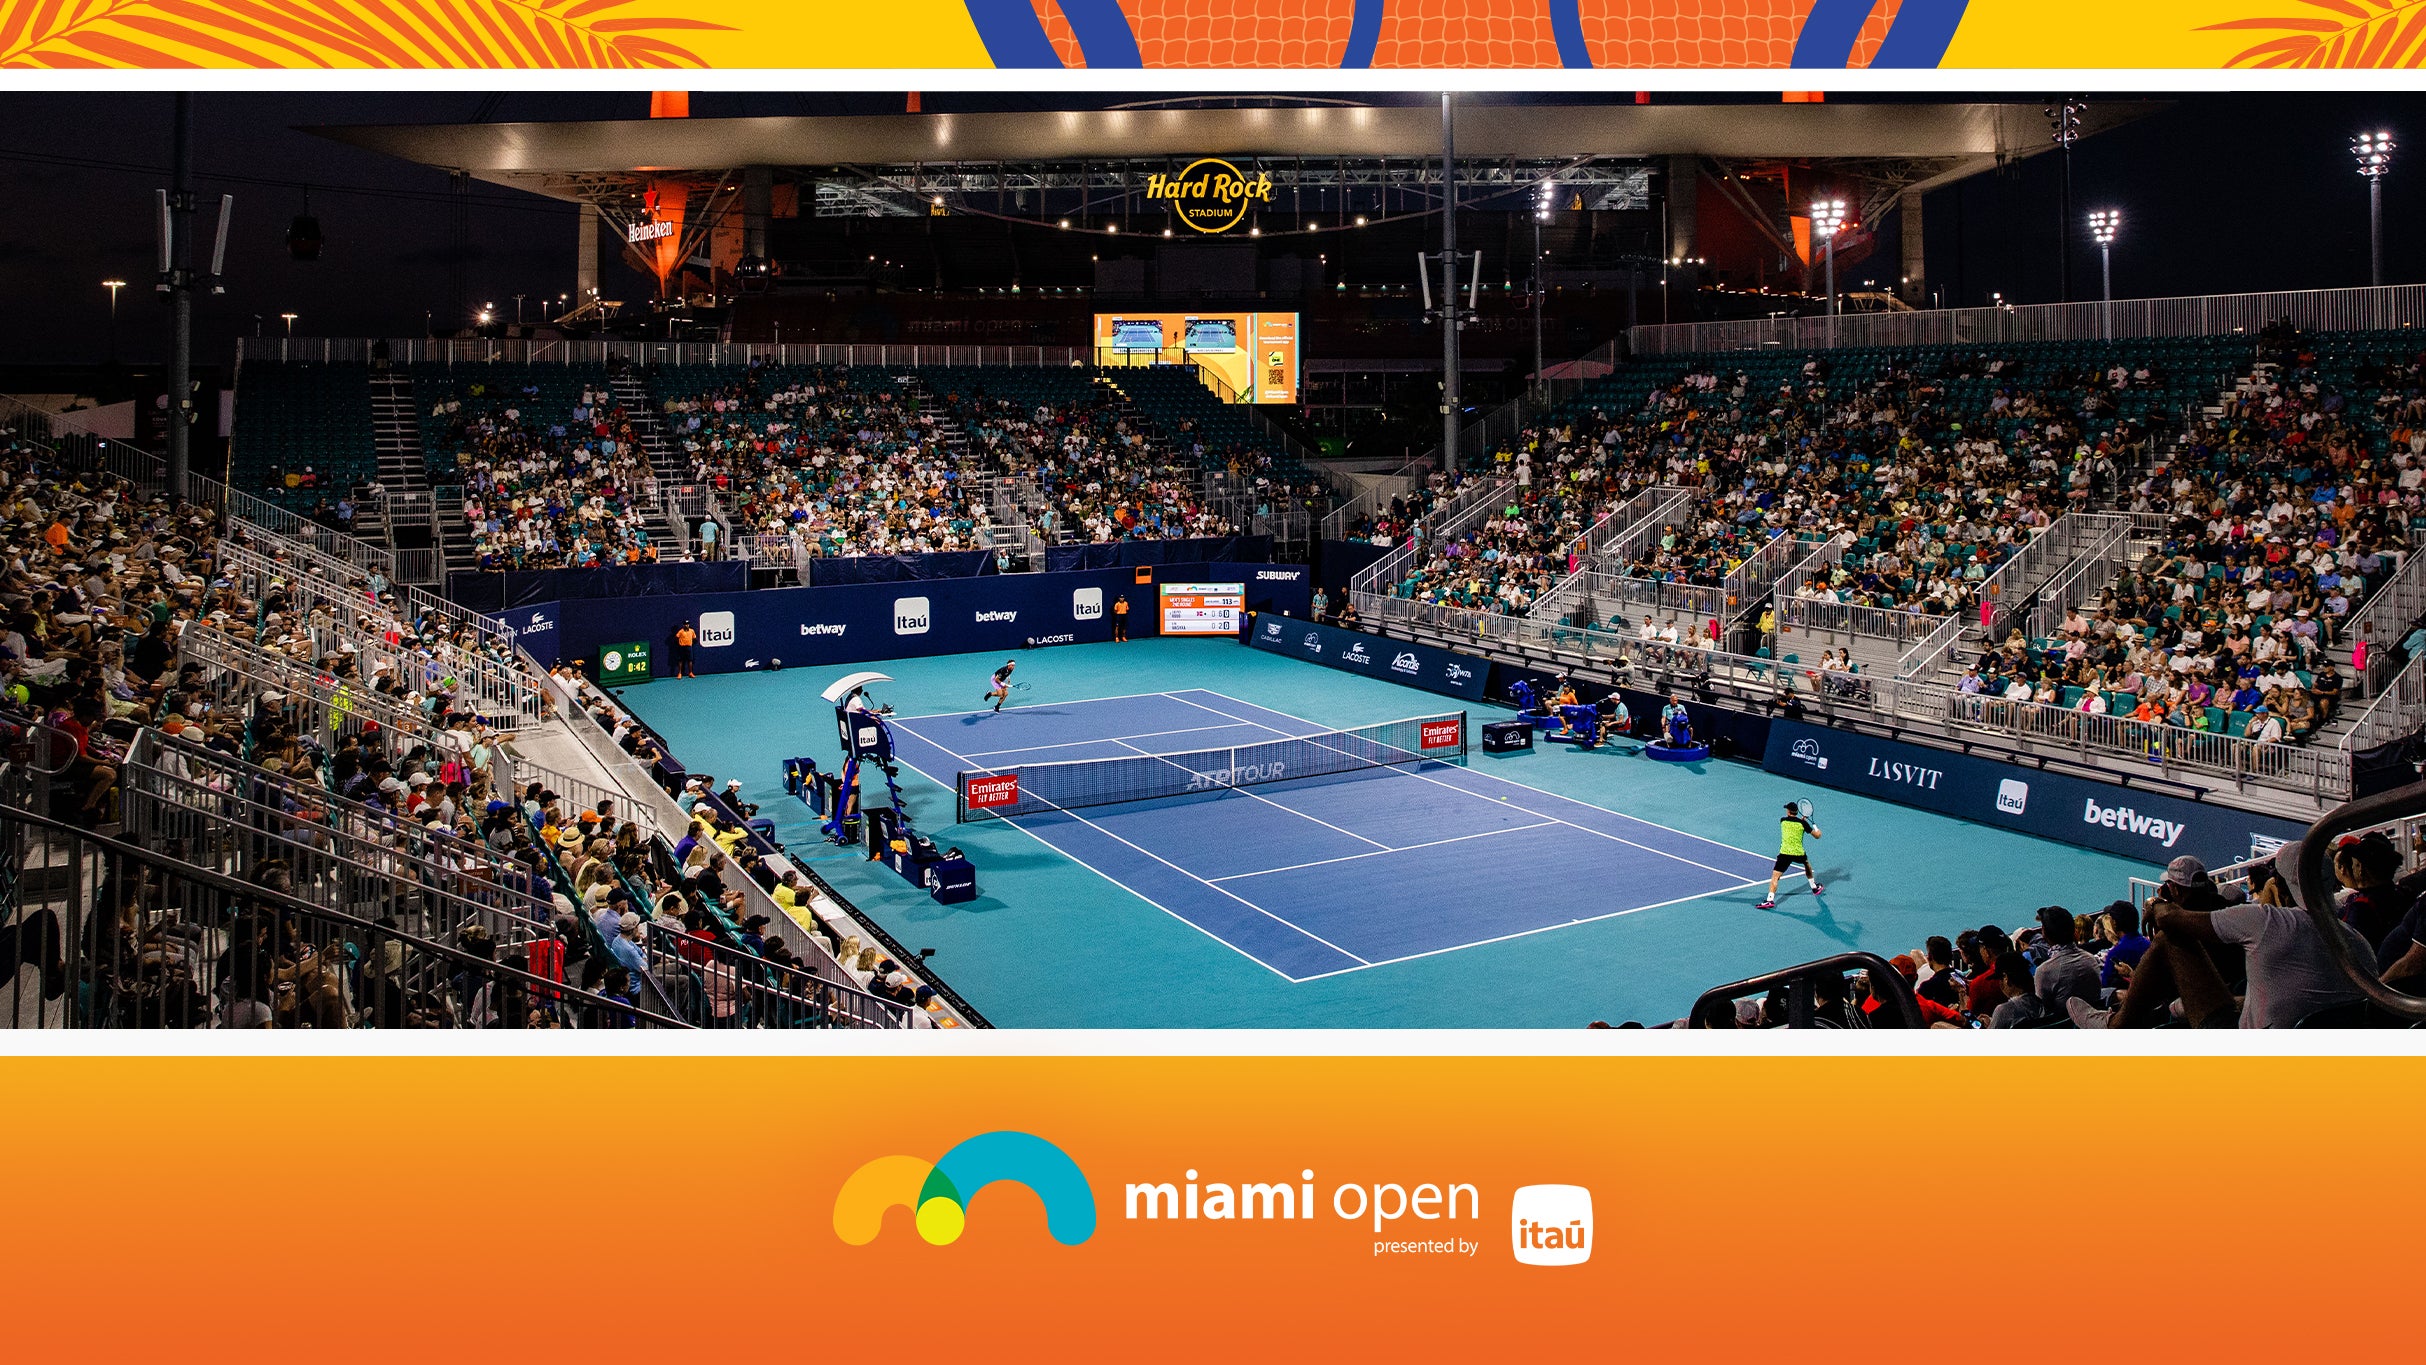 Miami Open - Grandstand Session 3 in Miami promo photo for Miami Open presale offer code